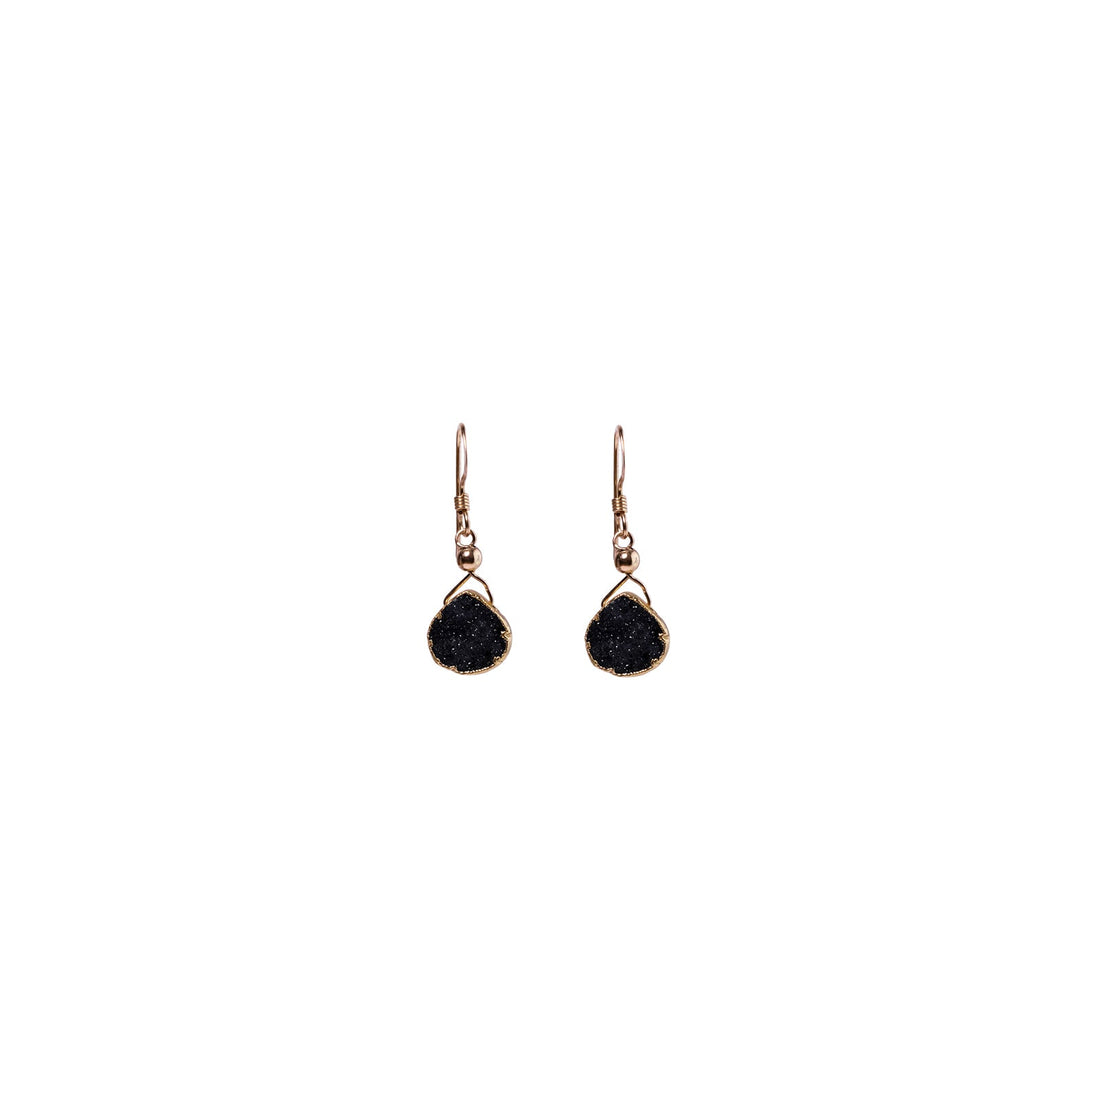 Julianna Earrings, Black Druzy Pear with Contoured Gold Bezel Earrings Sayulita Sol 